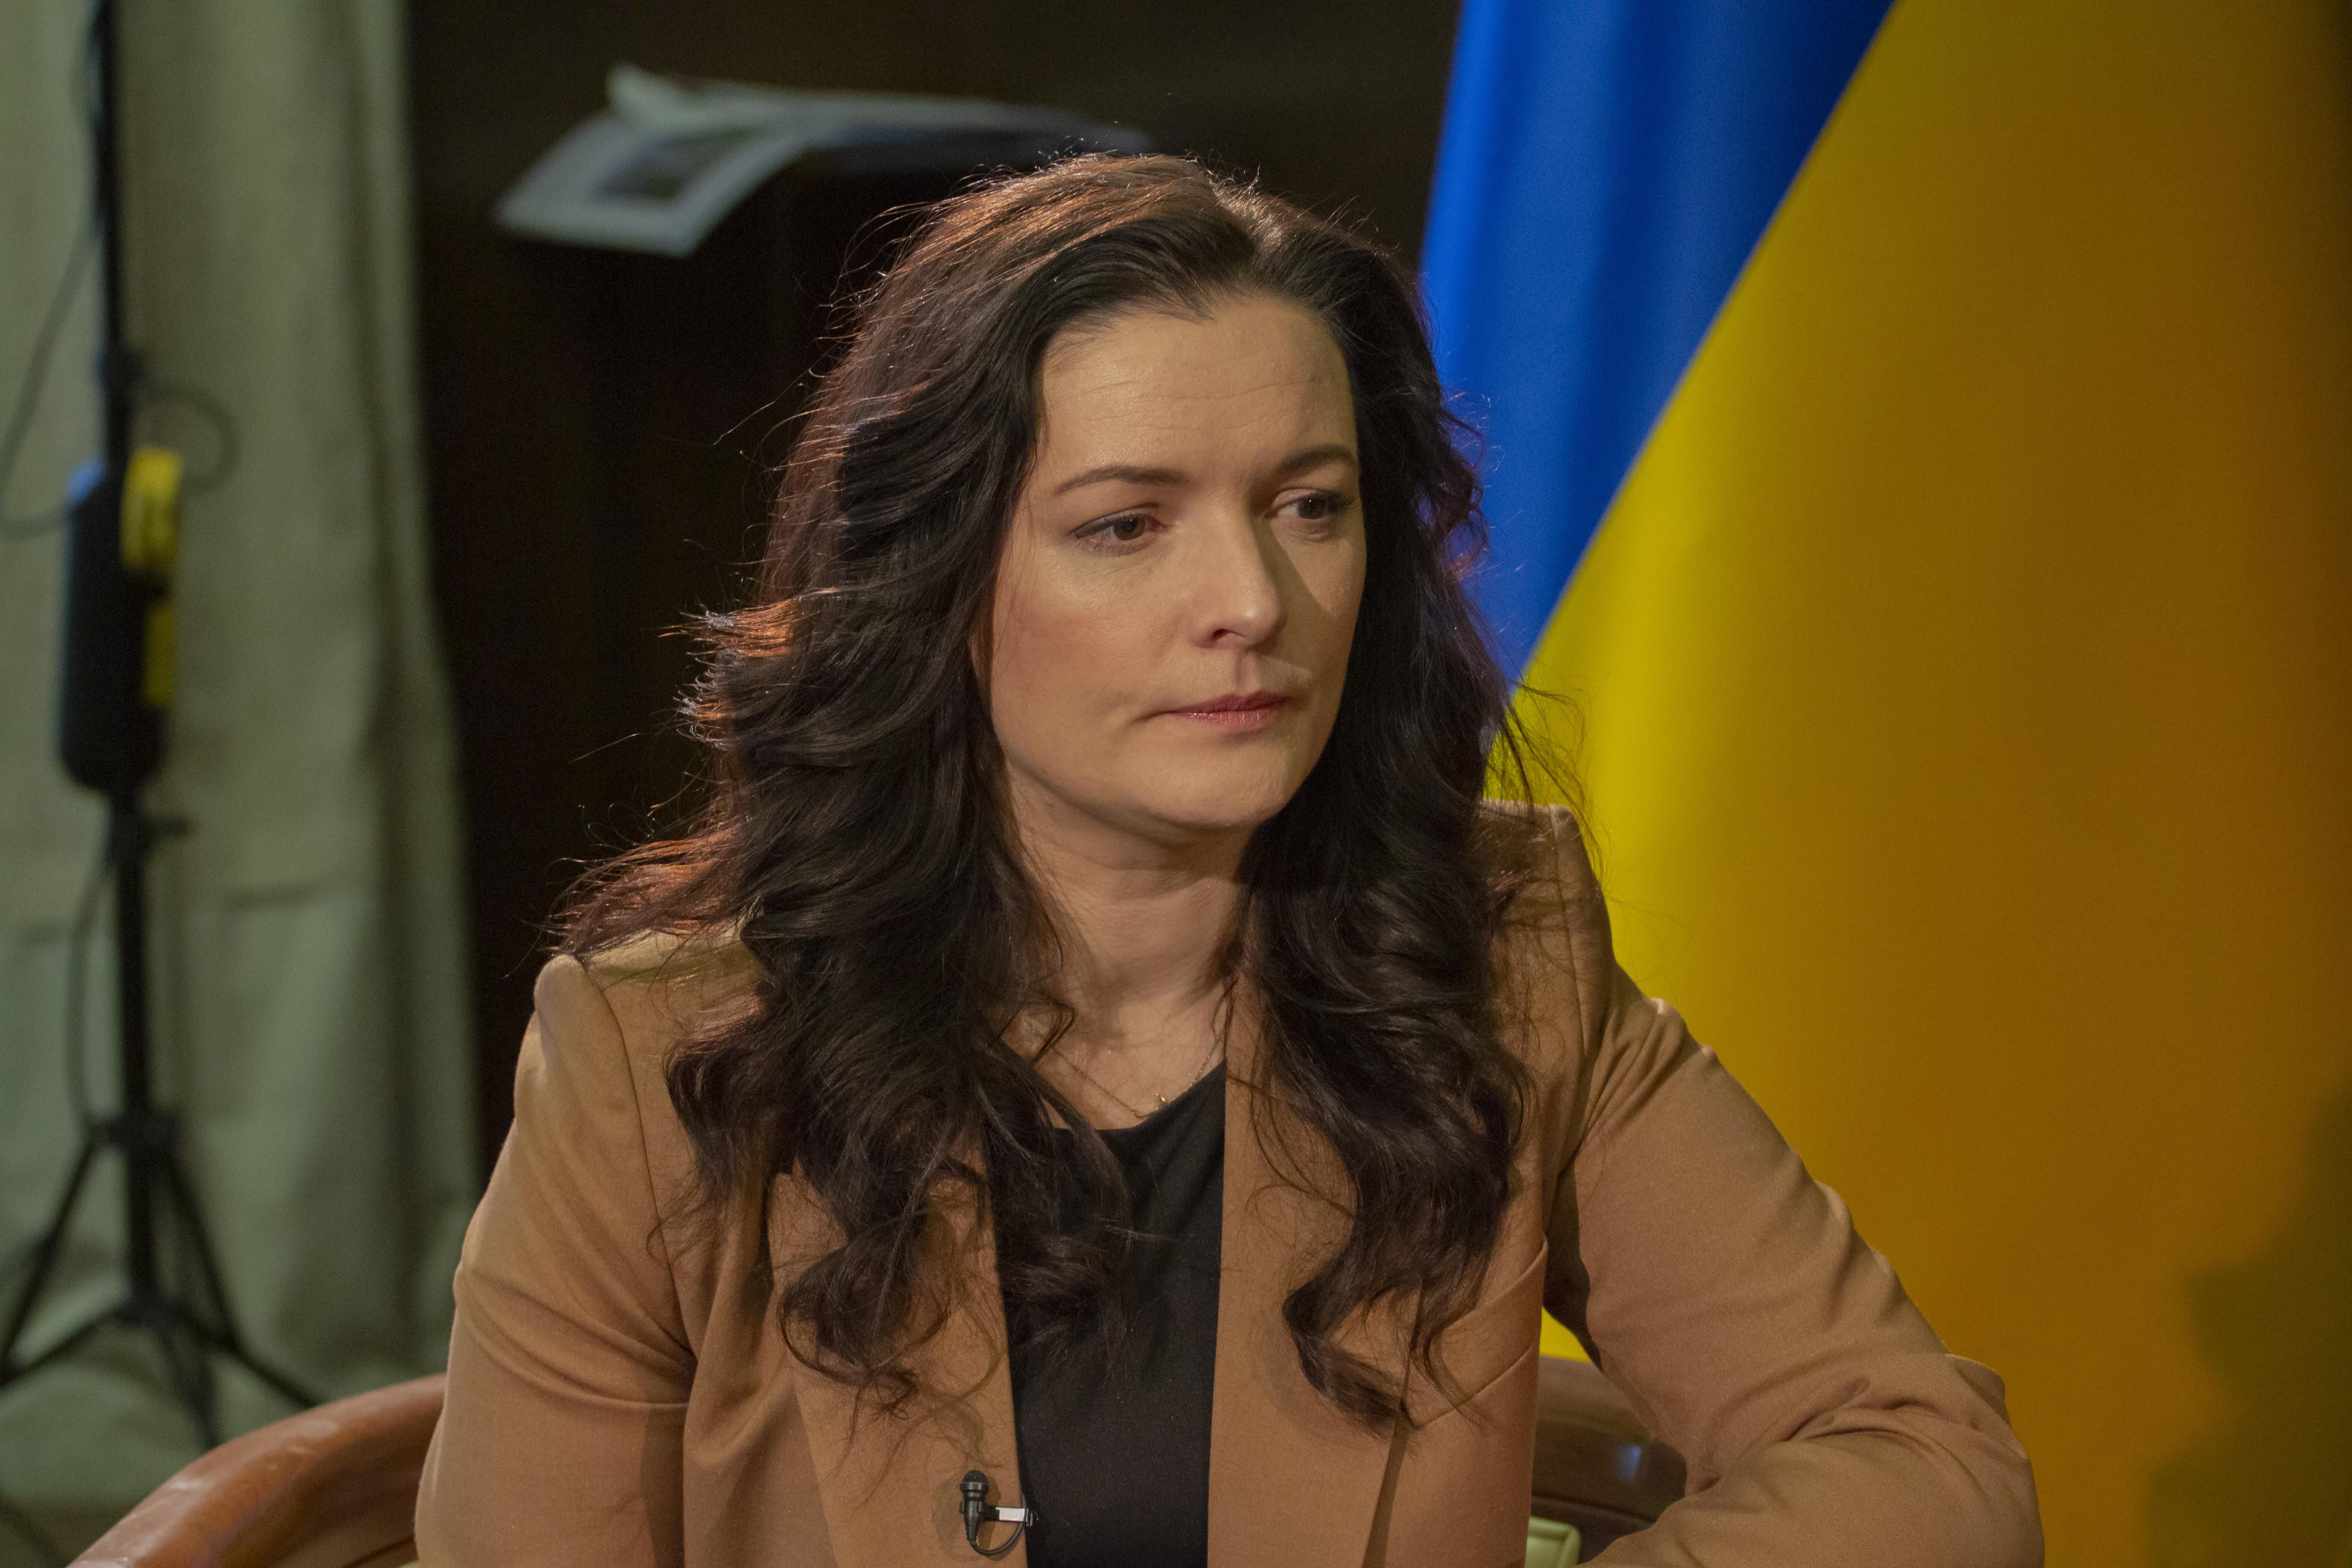 Зоряна Скалецкая: биография и что известно о министре МОЗ Украины